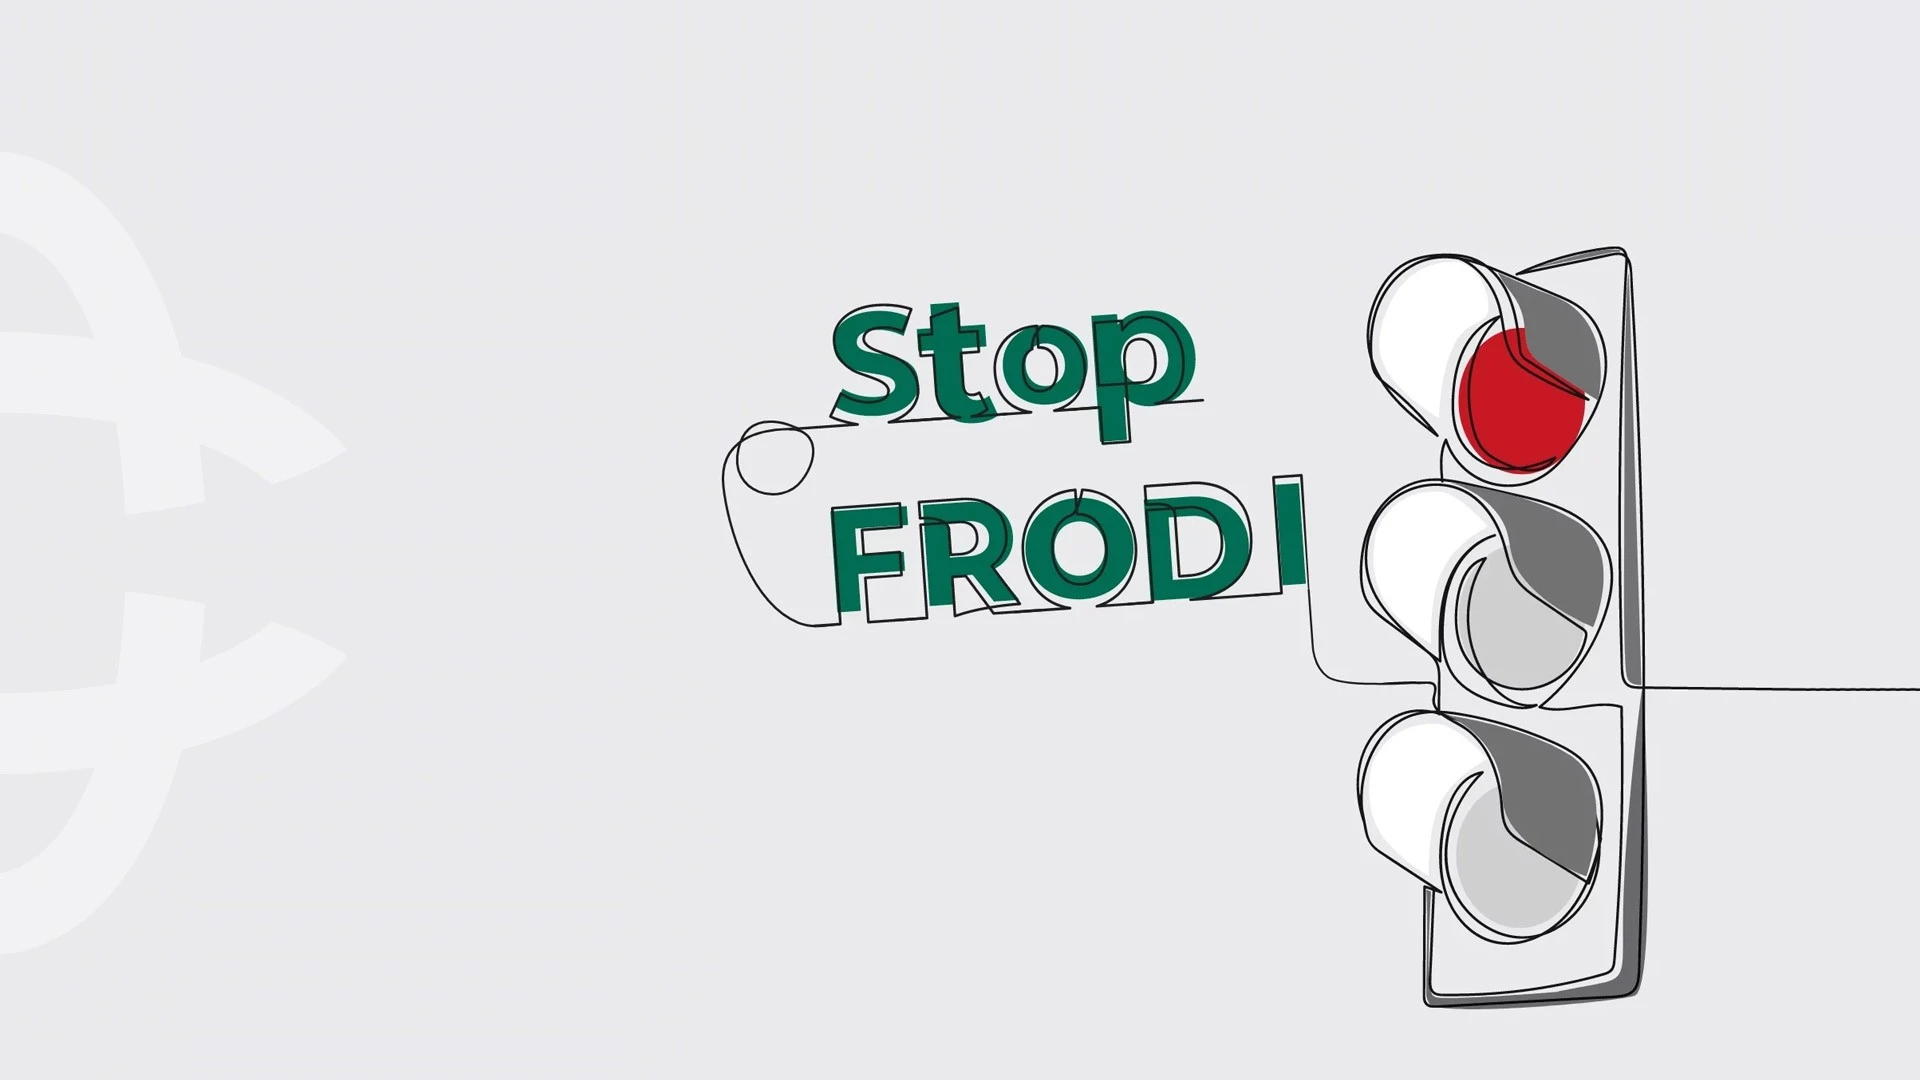 STOP FRODI